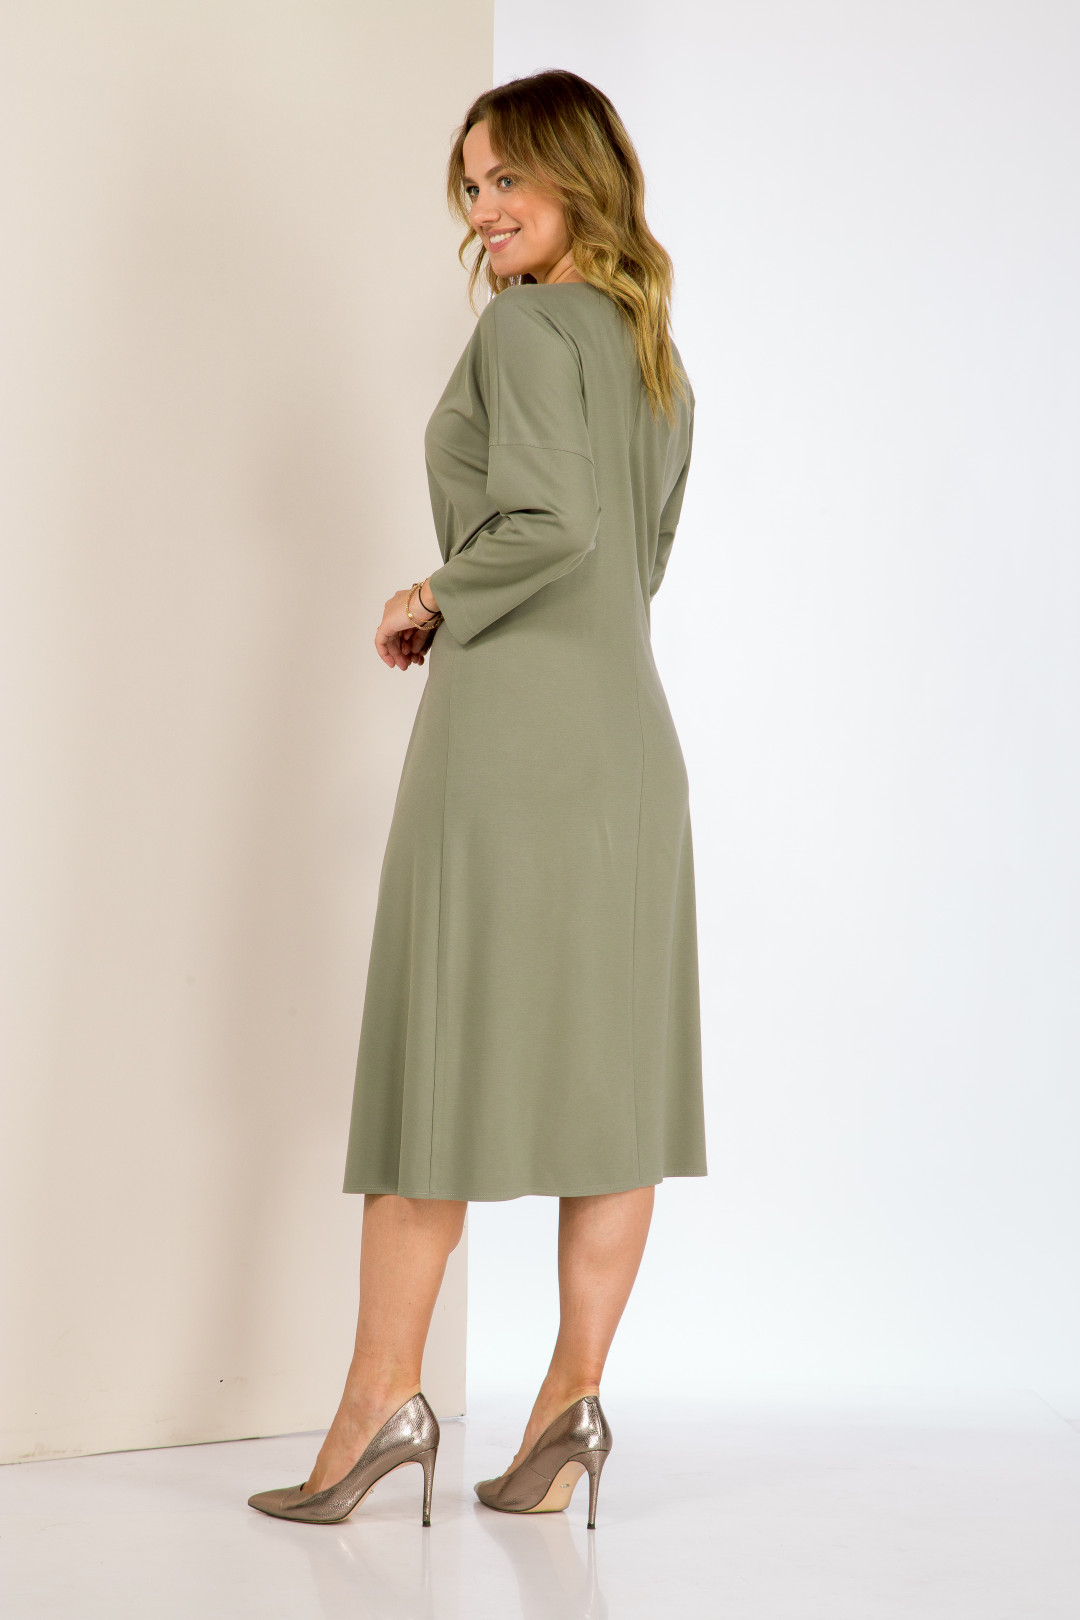 Платье Карина Делюкс В-314-1 оливковый